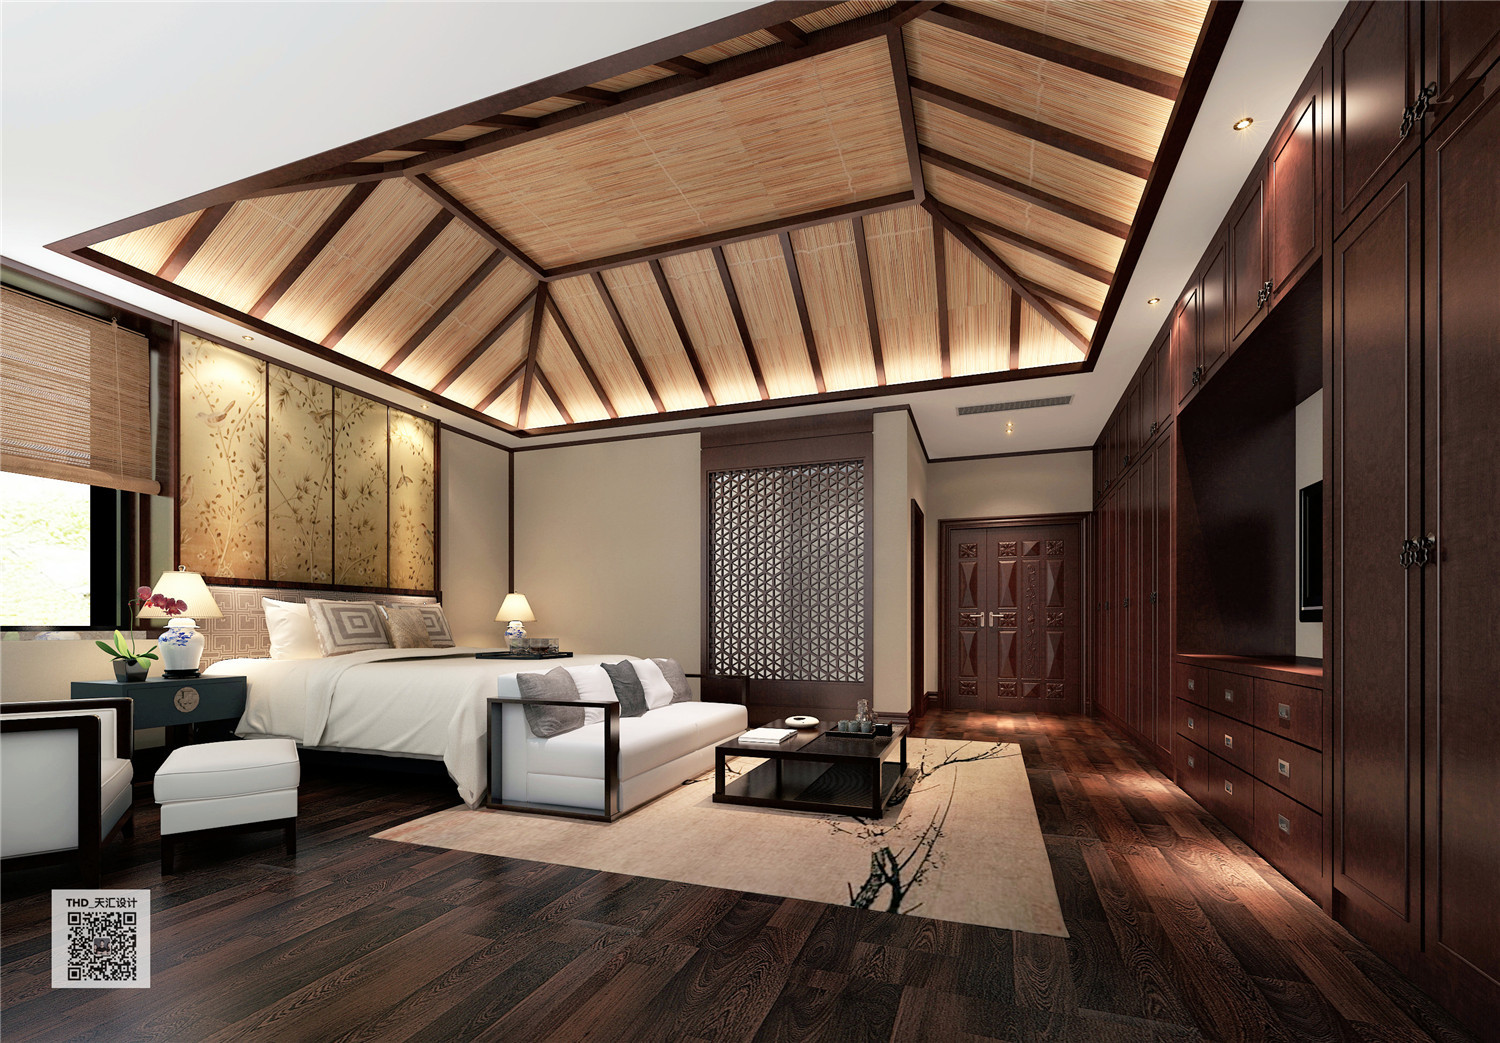 新中式 别墅 豪宅 中式 游小华 卧室图片来自福建天汇设计工程有限公司在THD-天汇设计《九富墅》的分享